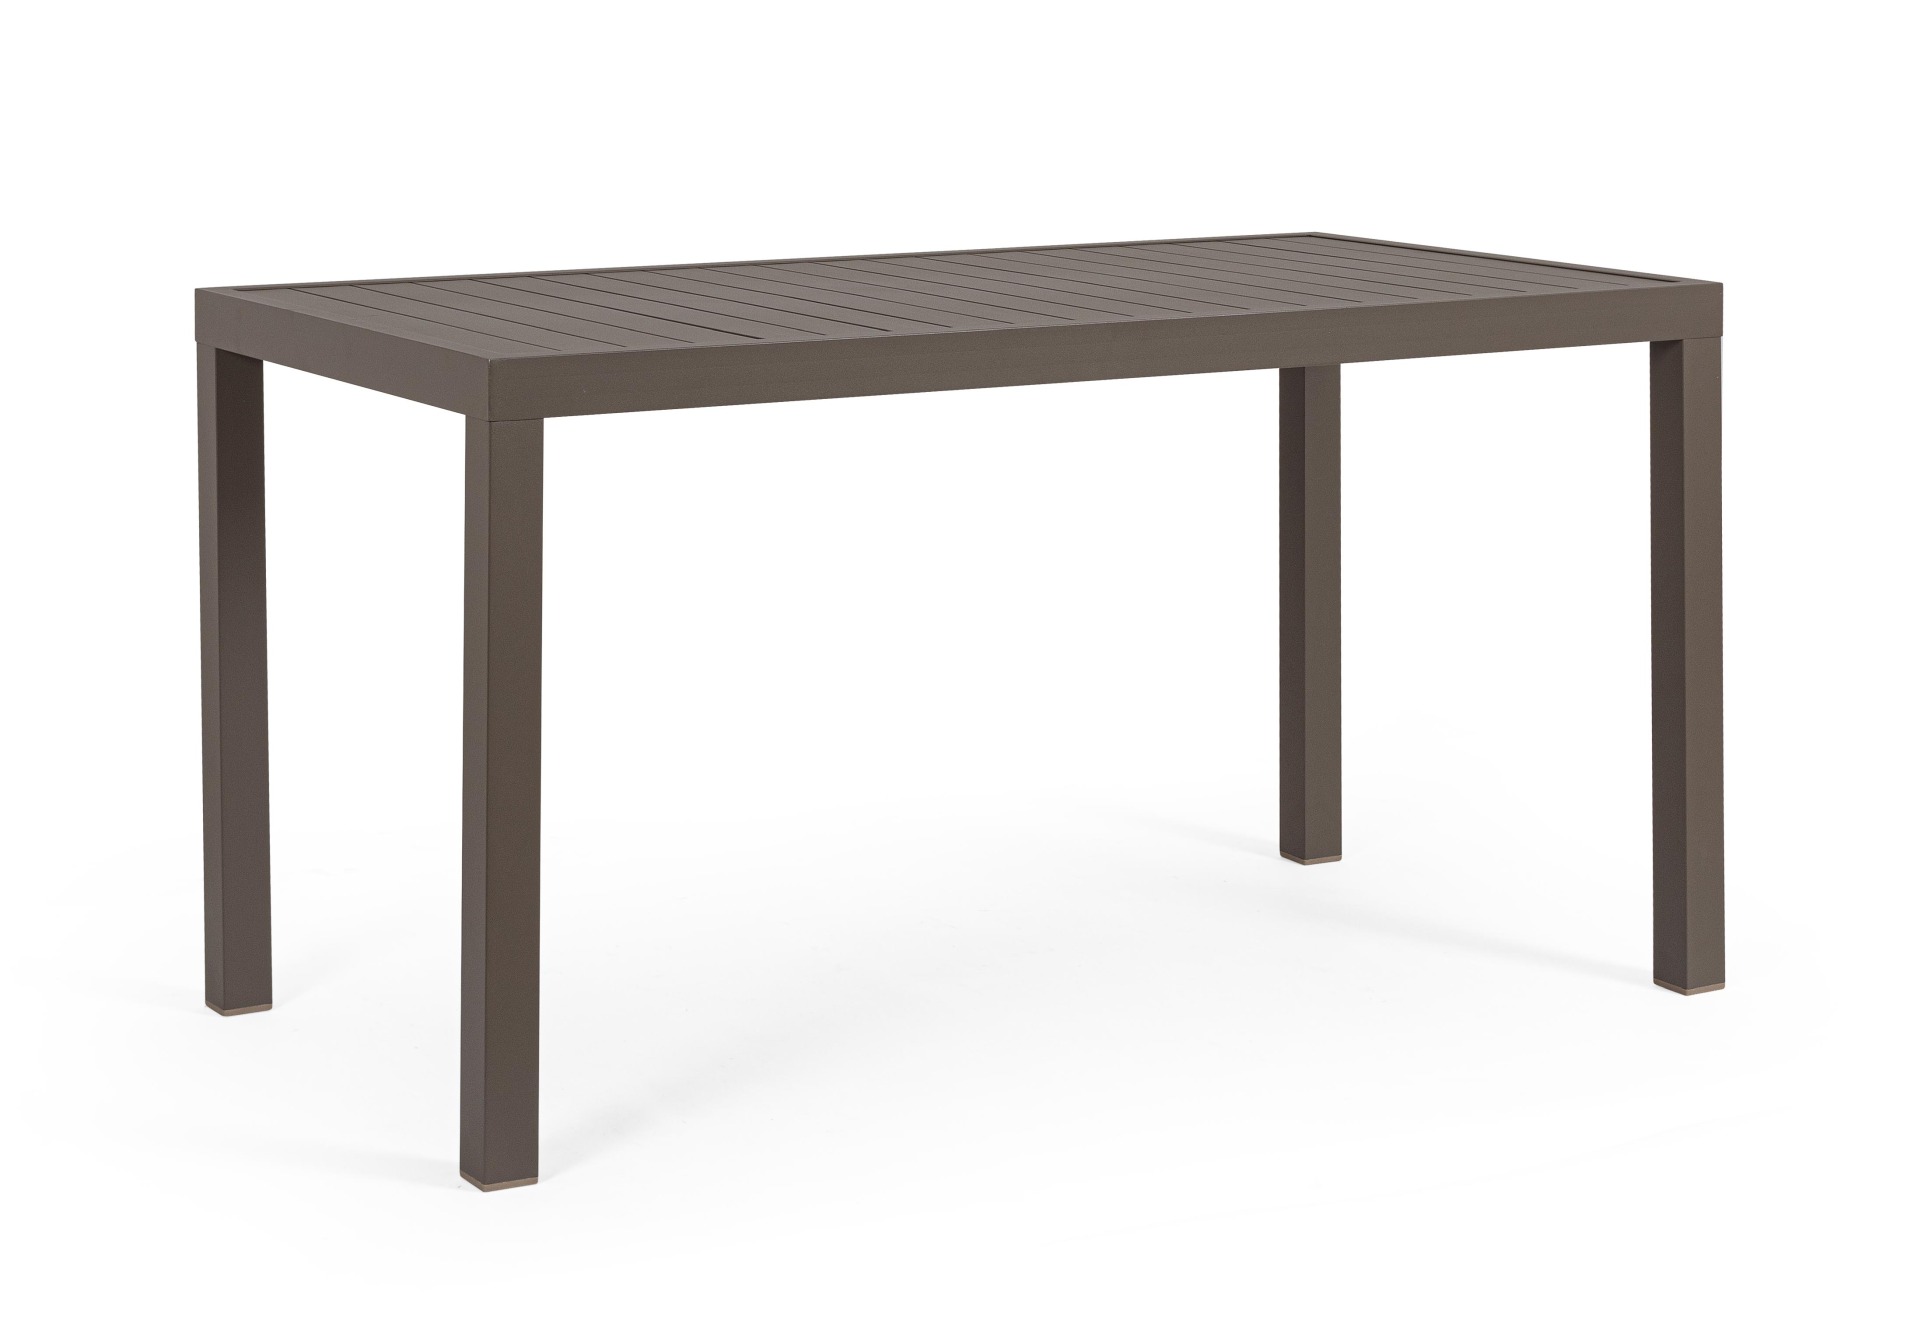 Der Gartentisch Hilde überzeugt mit seinem modernen Design. Gefertigt wurde er aus Aluminium, welches einen braunen Farbton besitzt. Das Gestell ist aus auch Aluminium und hat eine braune Farbe. Der Tisch verfügt über eine Länge von 130 cm und ist für den